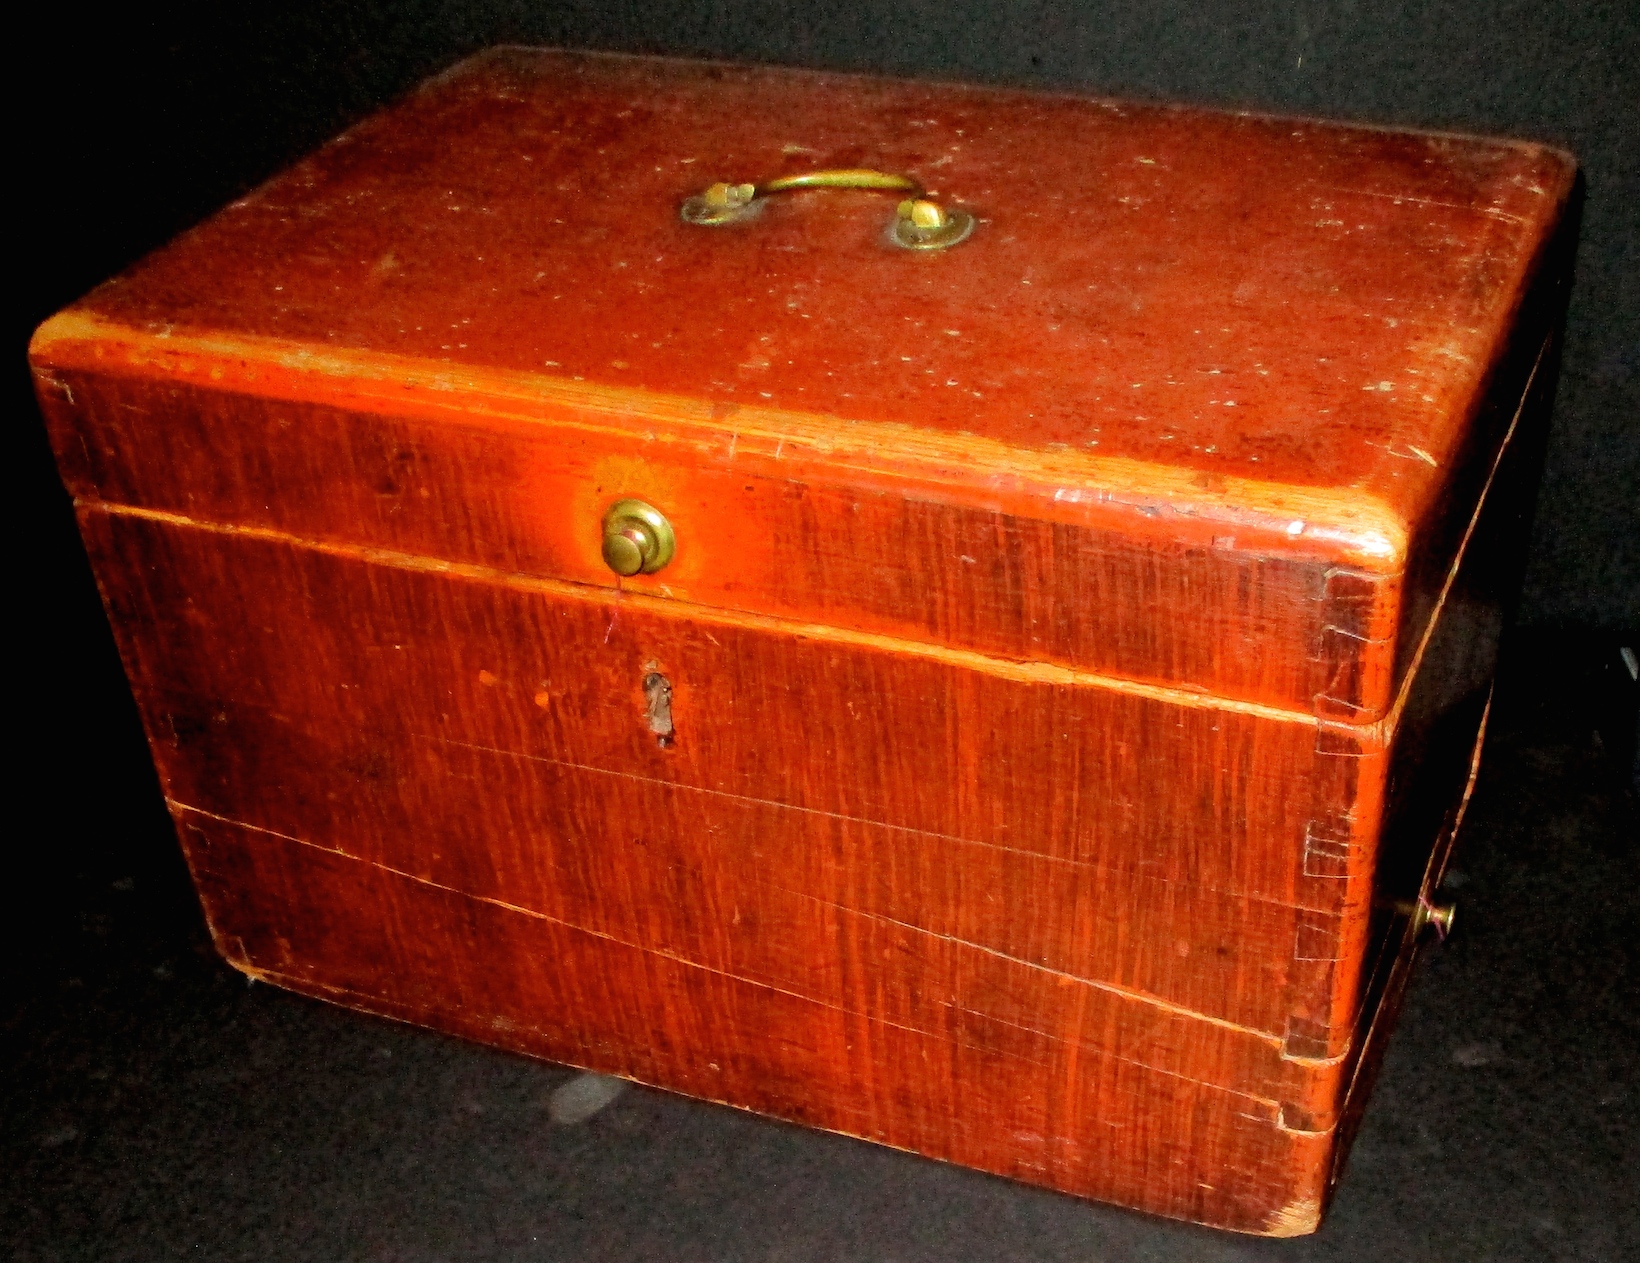 Rare 19th Century Locking Sugar Storage Box w/Internal Hand-forged, Sugar Cone Chopper (10" x 11" x 17")